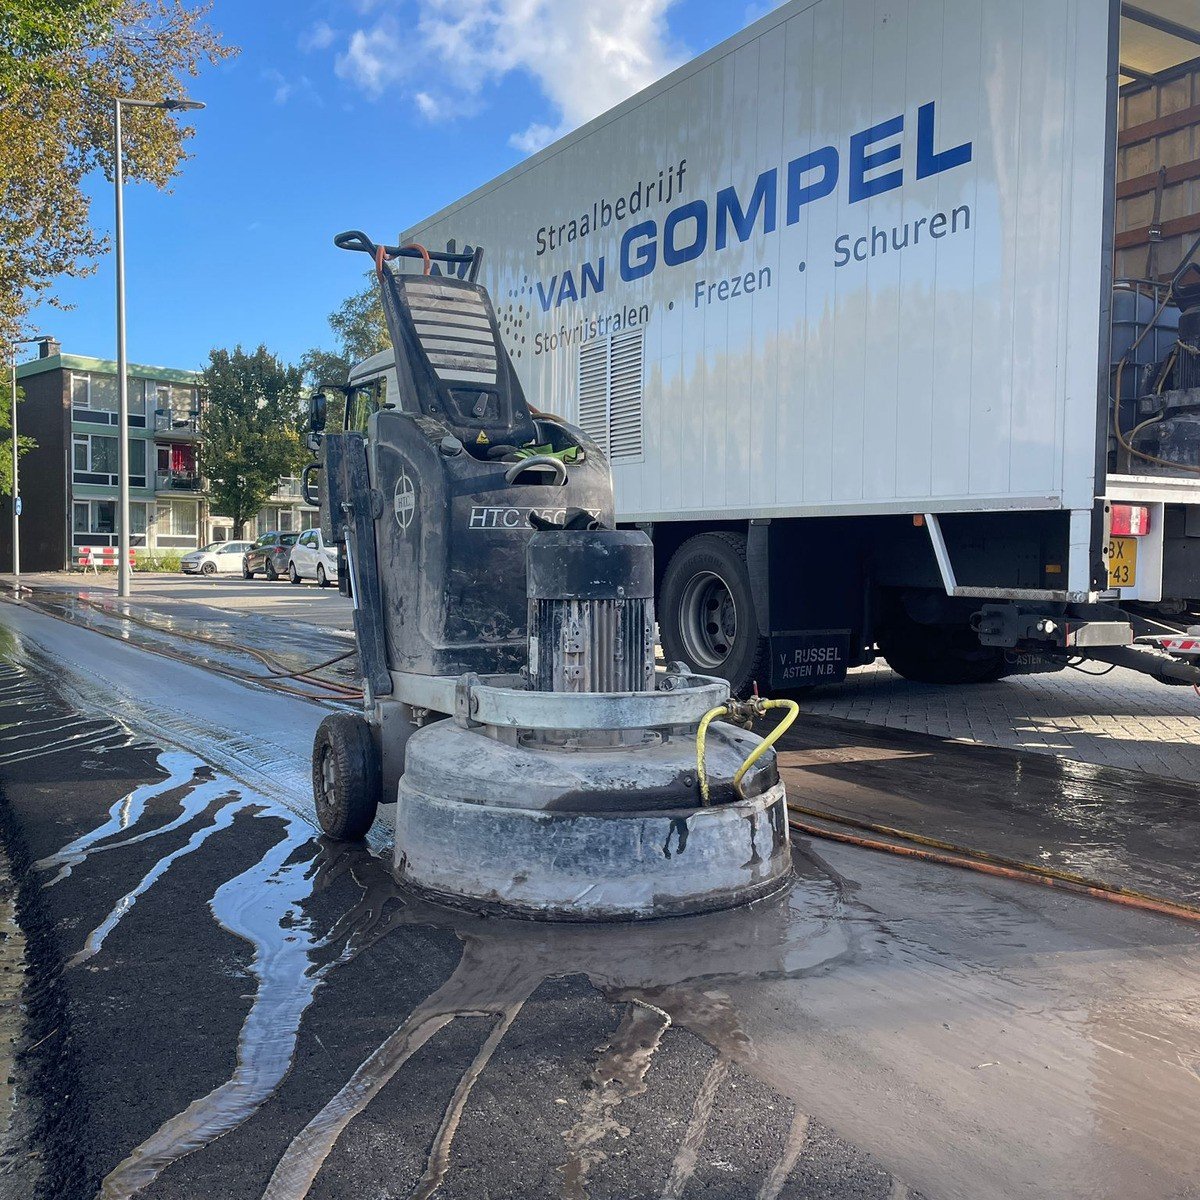 Gompel project 5 - Schuren met water.jpg